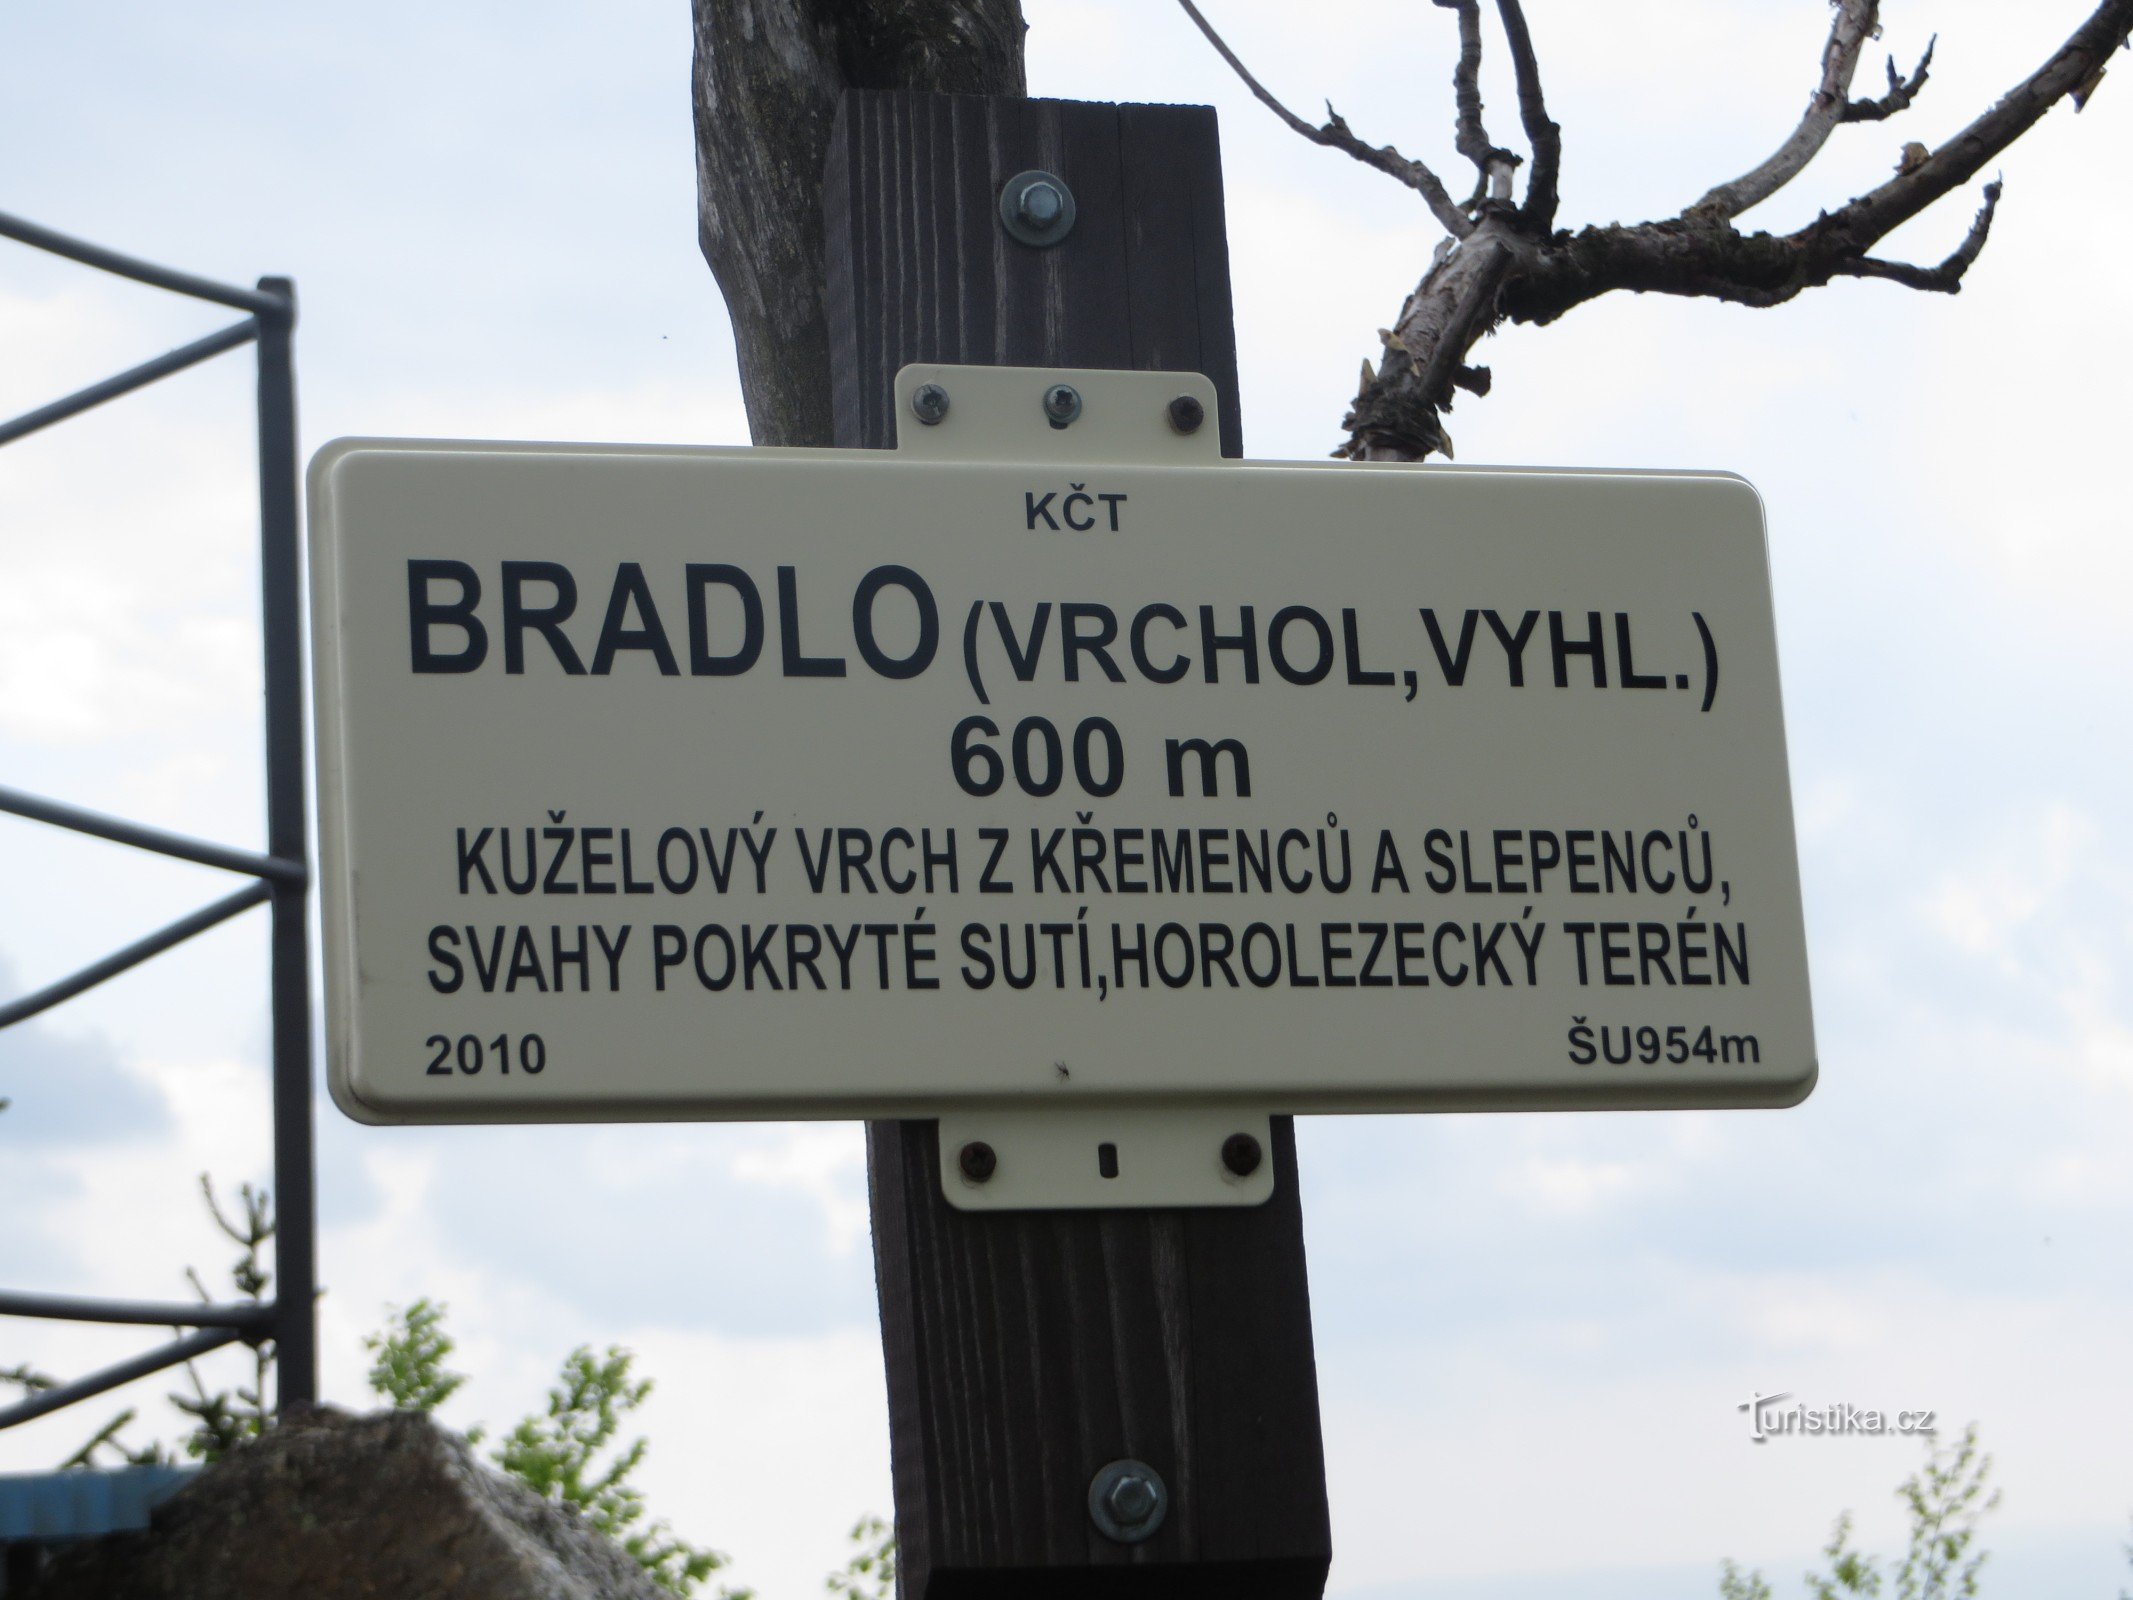 Πινακίδα Bradlo